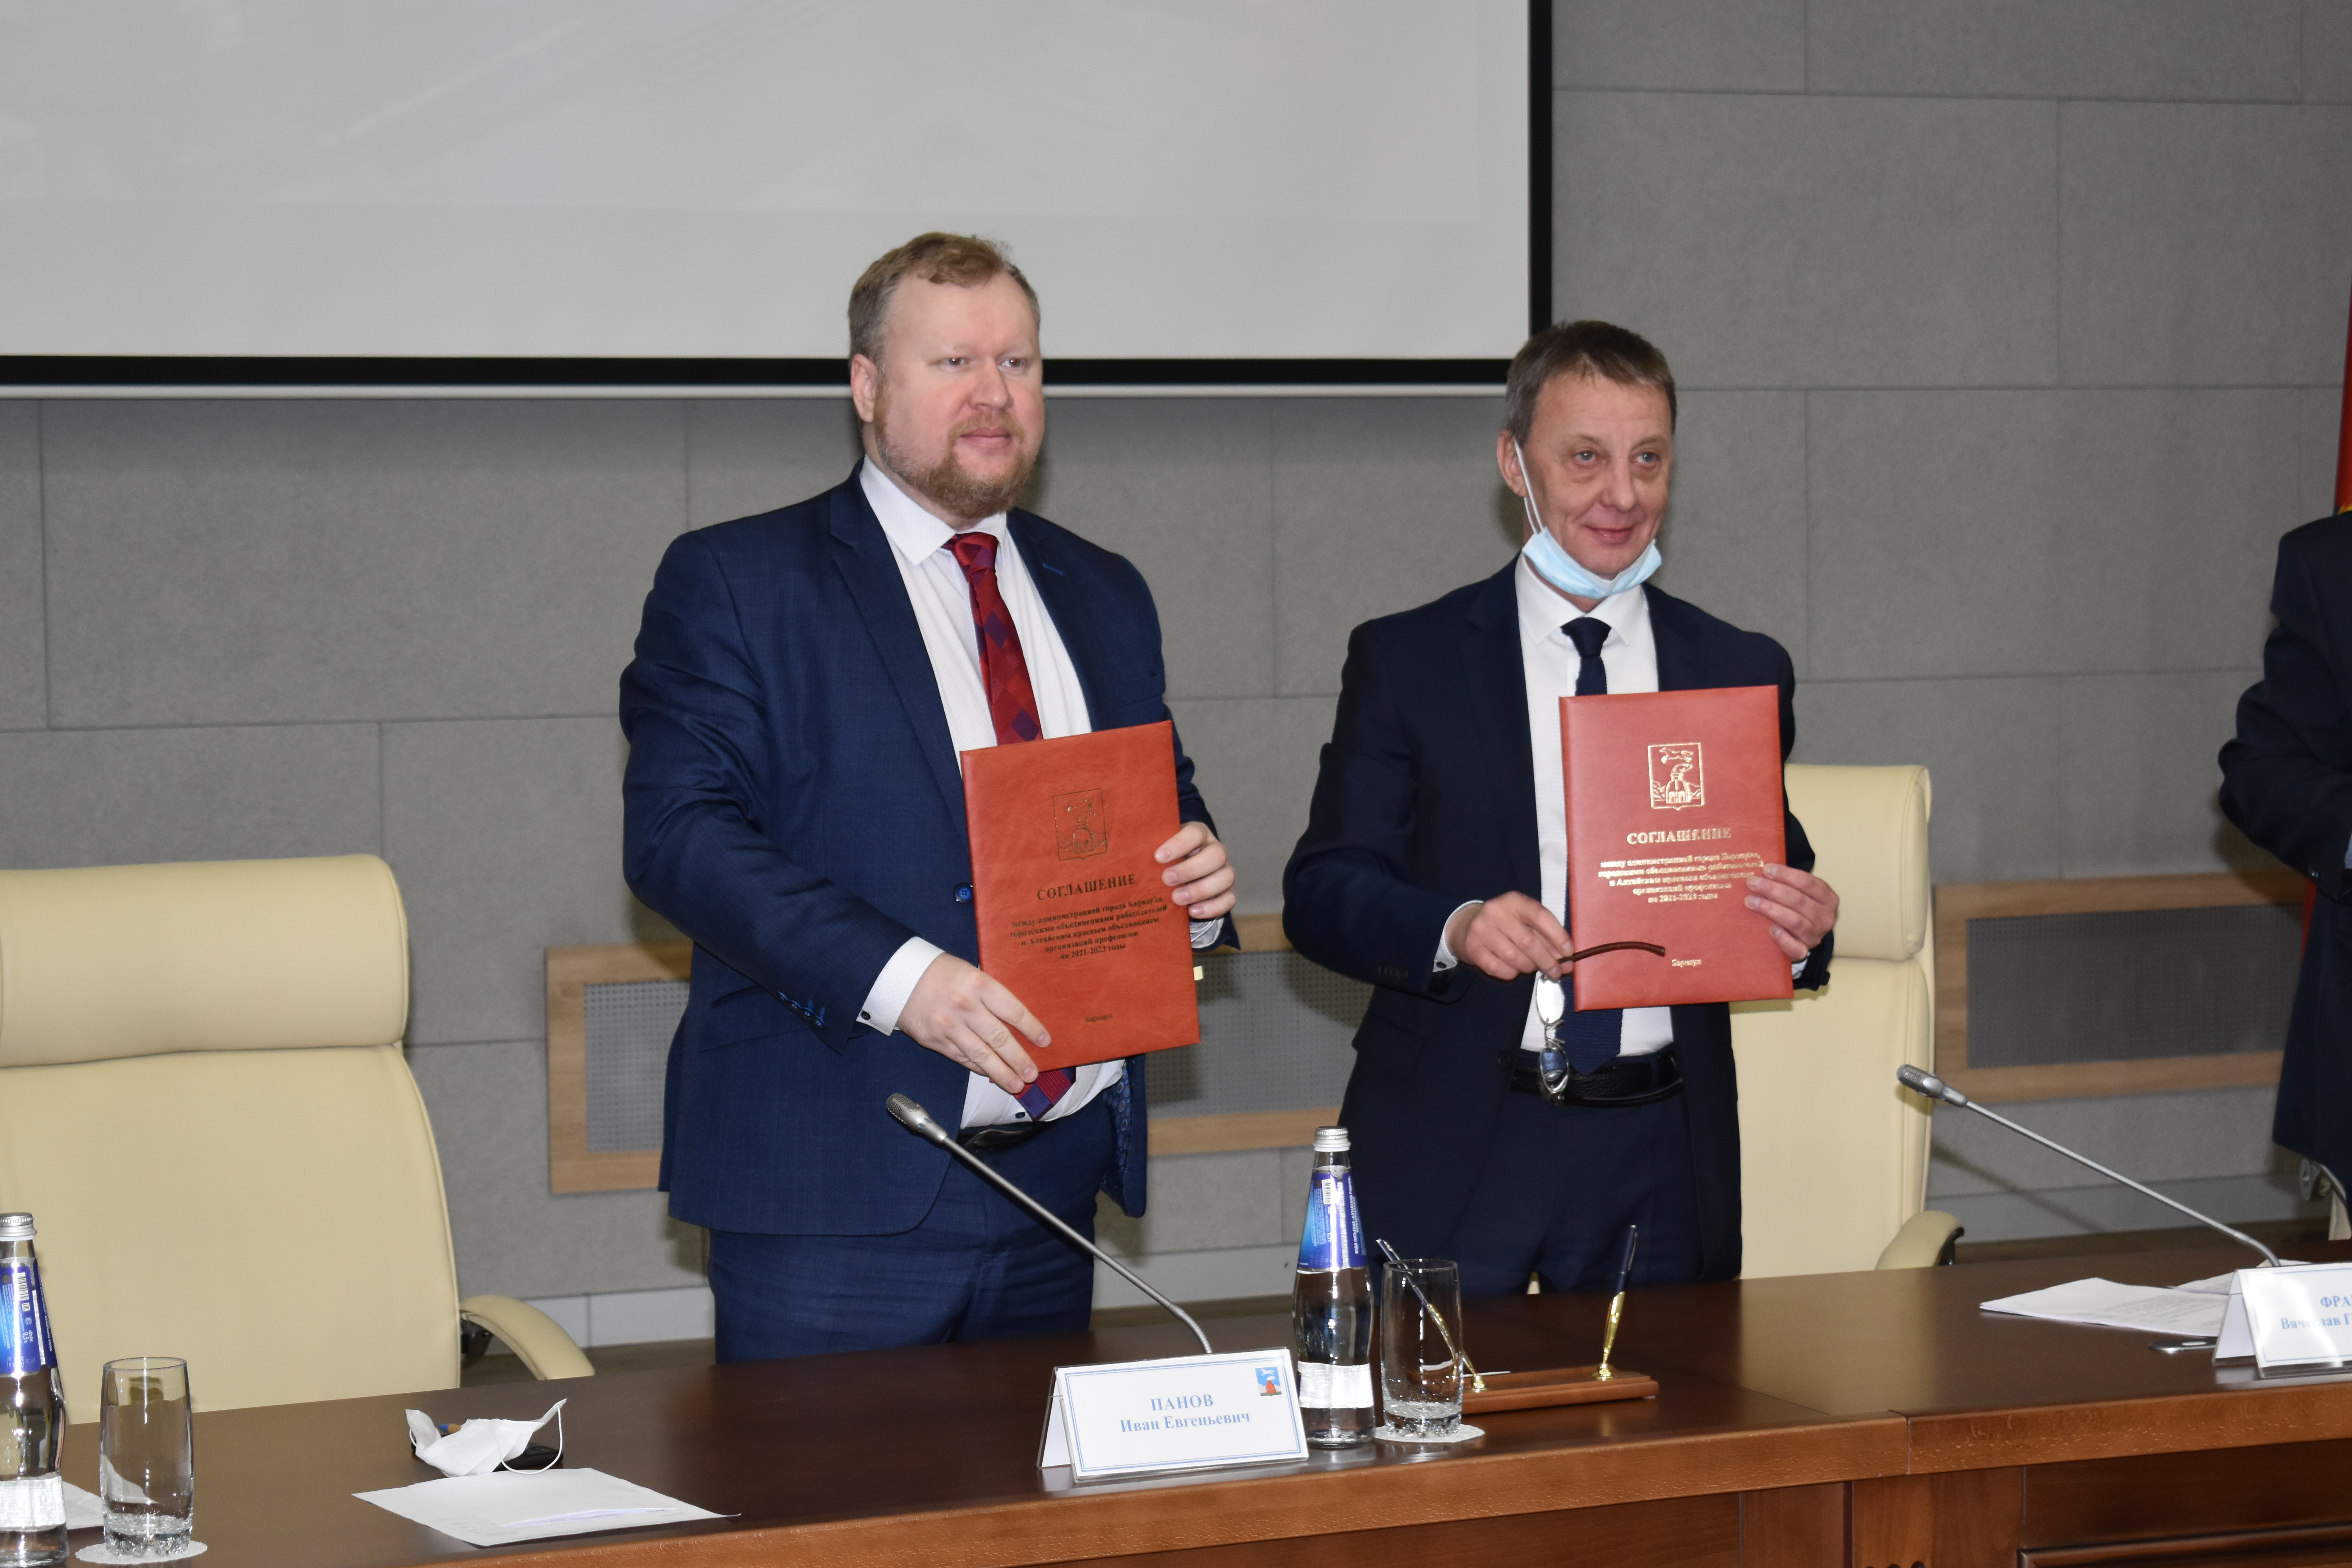 Подписано соглашение между Администрацией Барнаула, Крайсовпрофом и объединениями работодателей города на 2021-2023 годы 